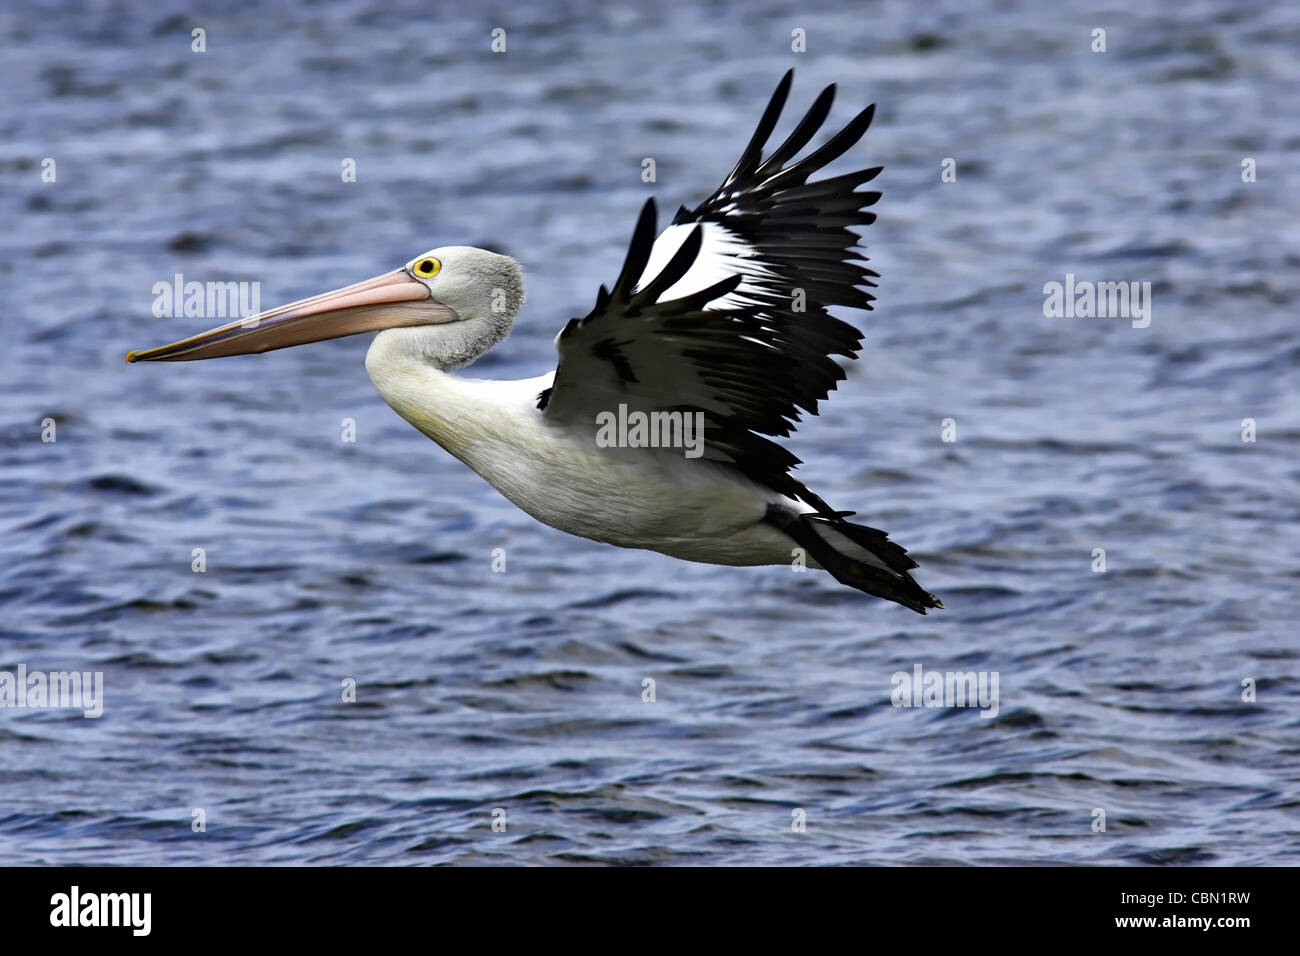 Australian Pelican (Pelecanus conspicillatus) in flight, Western Australia Stock Photo